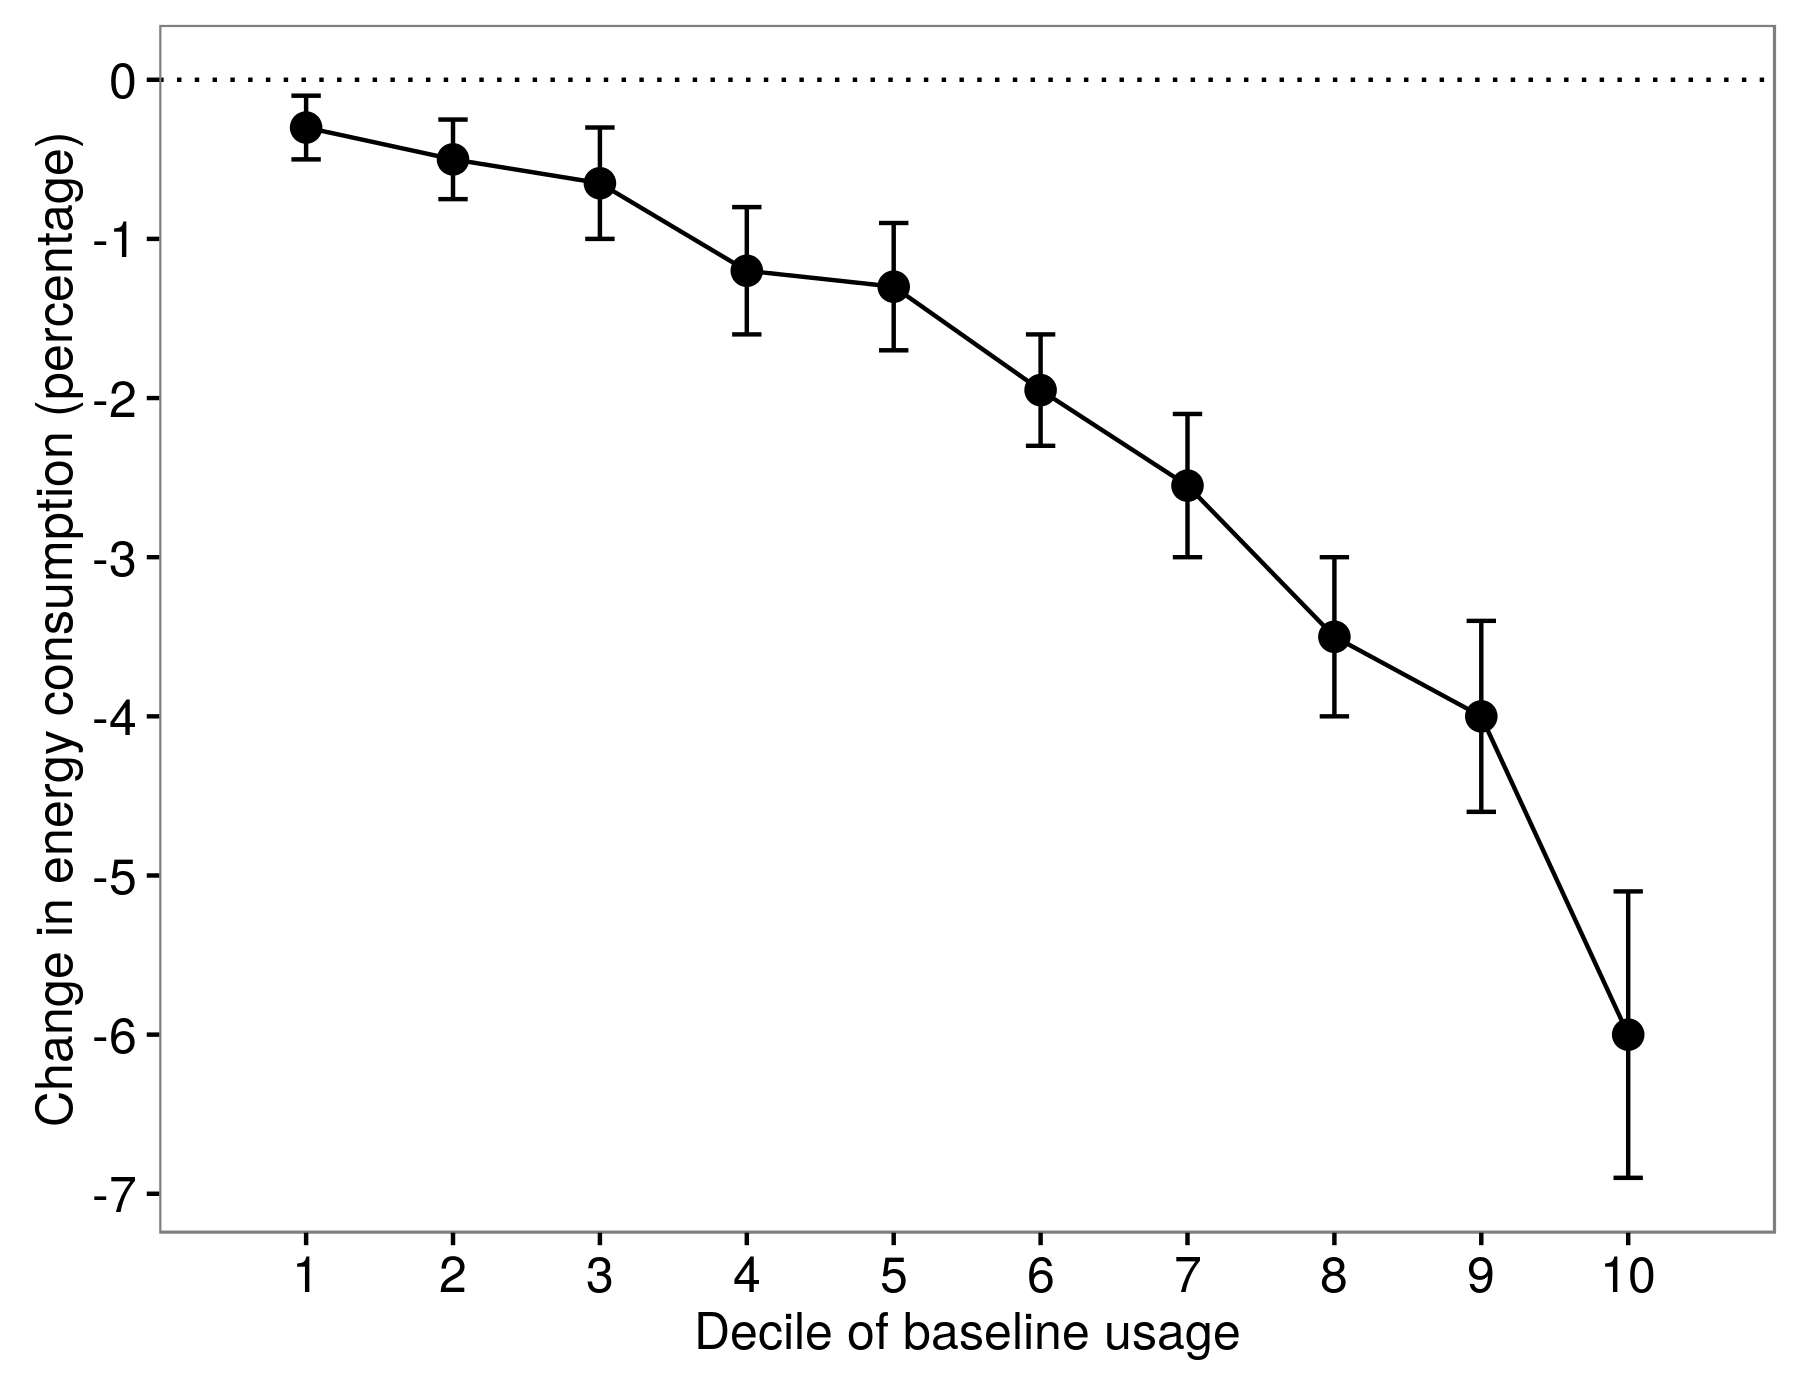 Şekil 4.8: Allcott'da (2011) tedavi etkilerinin heterojenliği. Enerji kullanımındaki düşüş, farklı temel kullanım oranlarındaki insanlarda farklıydı. Allcott'tan uyarlanmıştır (2011), şekil 8.